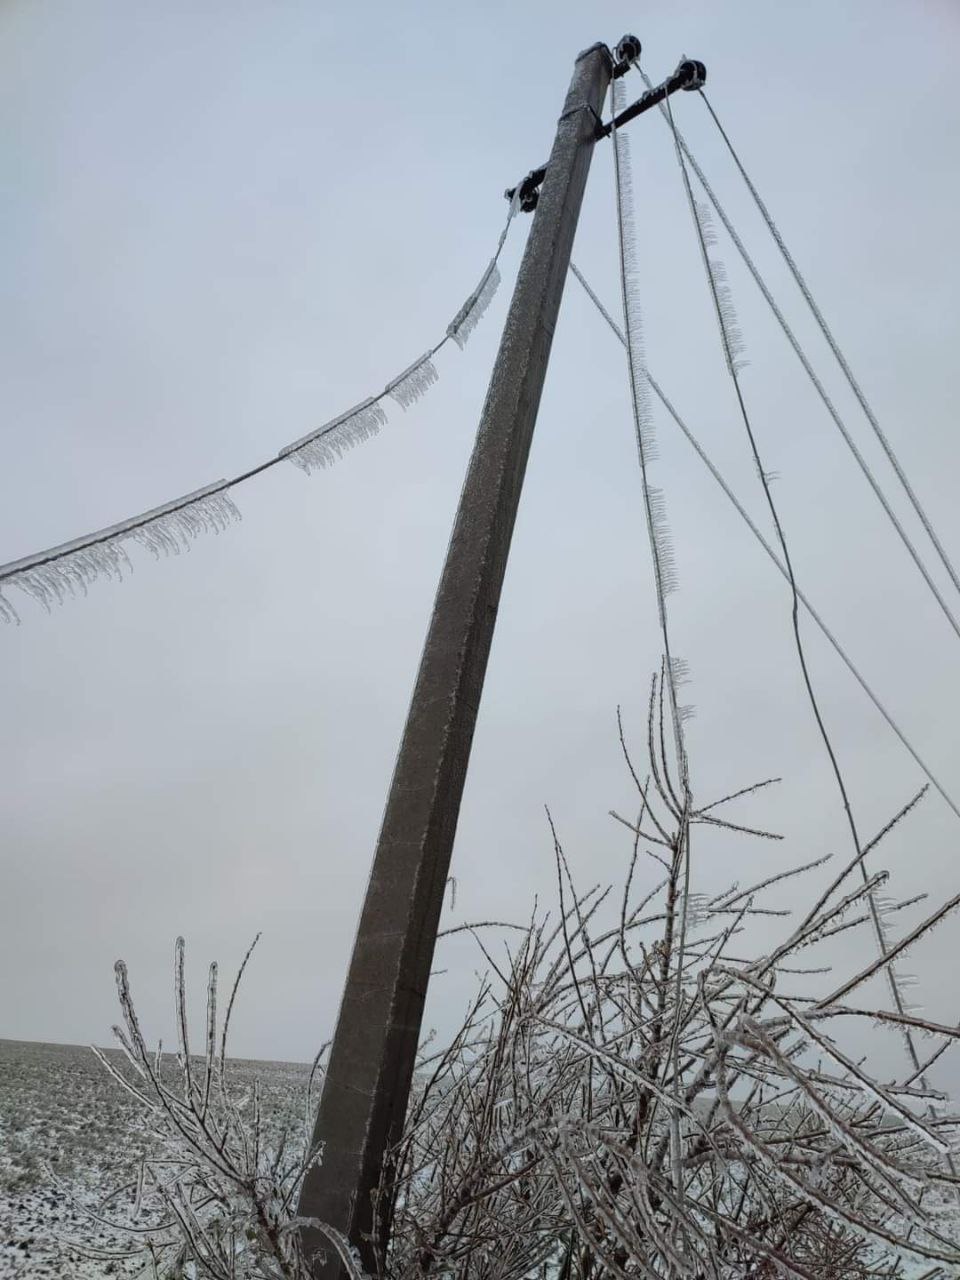 (ФОТО, ВИДЕО) На севере Молдовы продолжается снегопад. Полиция и спасатели работают круглосуточно